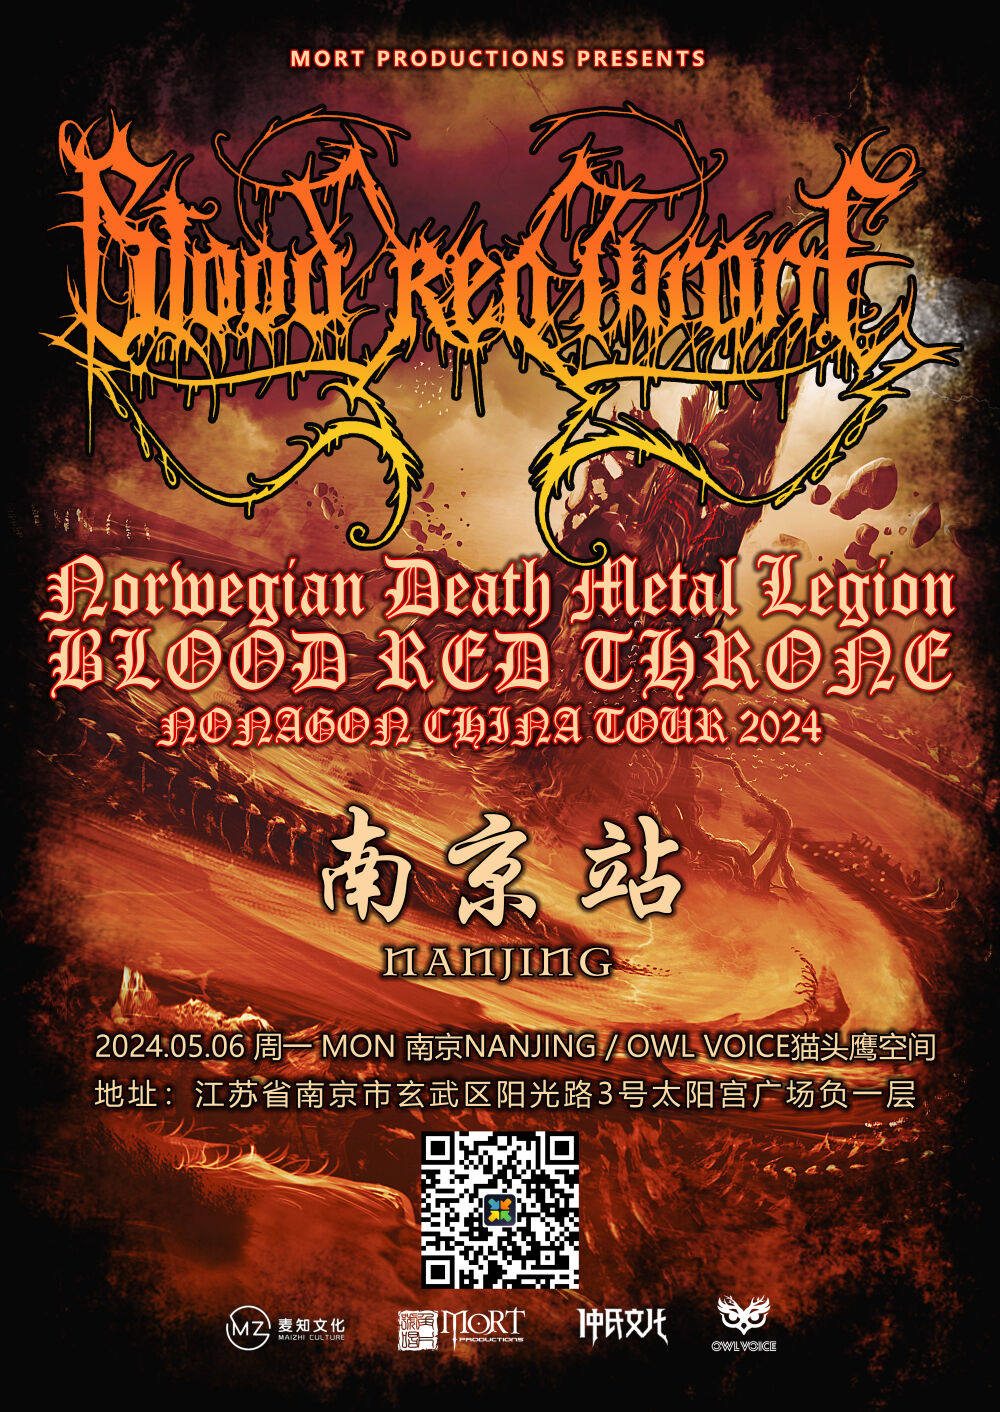 北欧传奇死亡金属Blood Red Throne 天津5.9、南京5.6专场发布